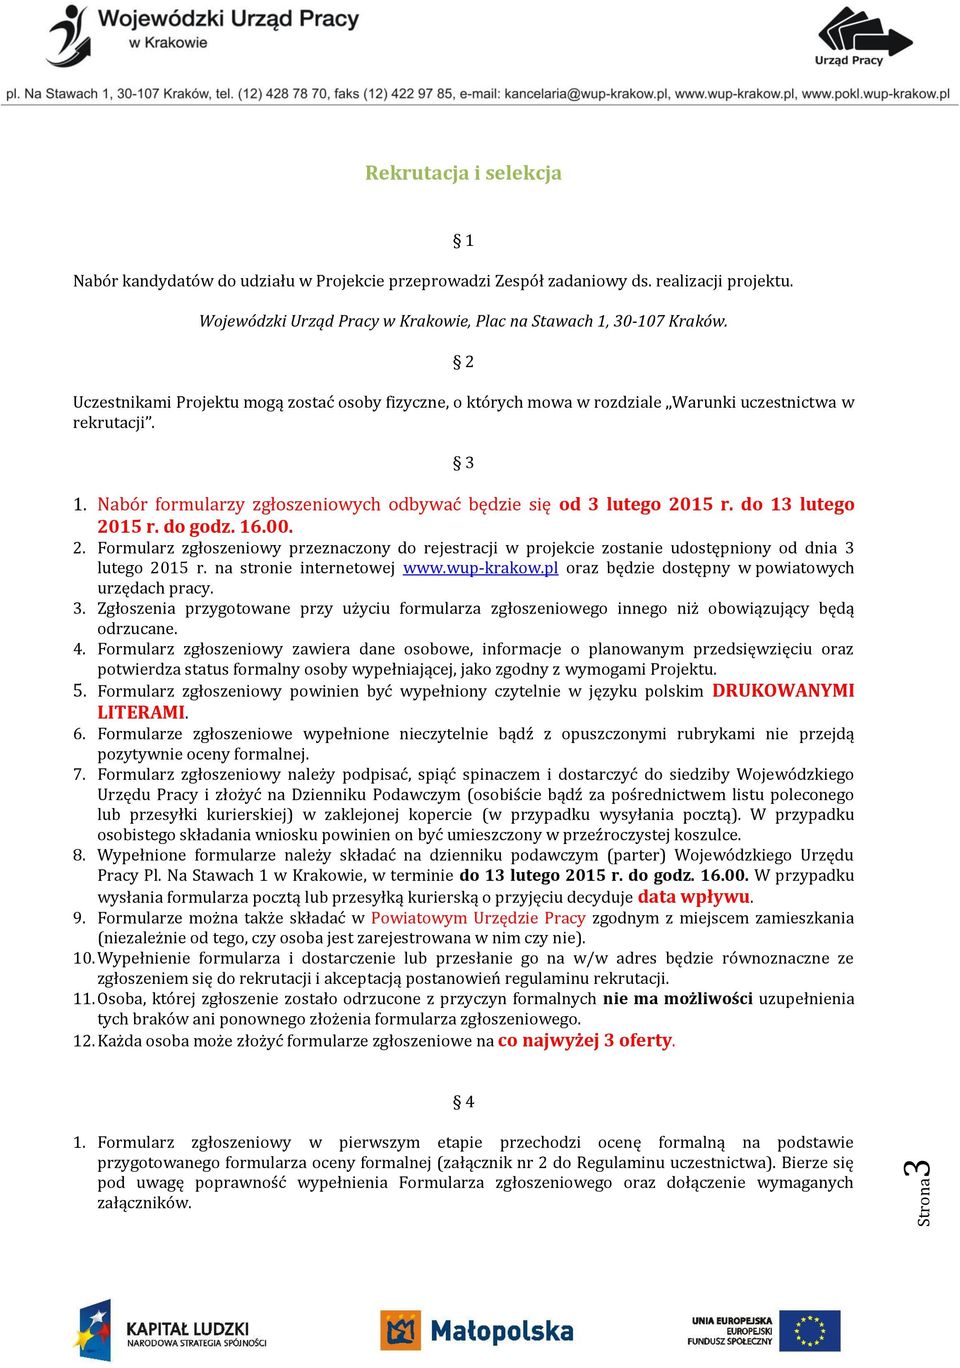 do 13 lutego 2015 r. do godz. 16.00. 2. Formularz zgłoszeniowy przeznaczony do rejestracji w projekcie zostanie udostępniony od dnia 3 lutego 2015 r. na stronie internetowej www.wup-krakow.